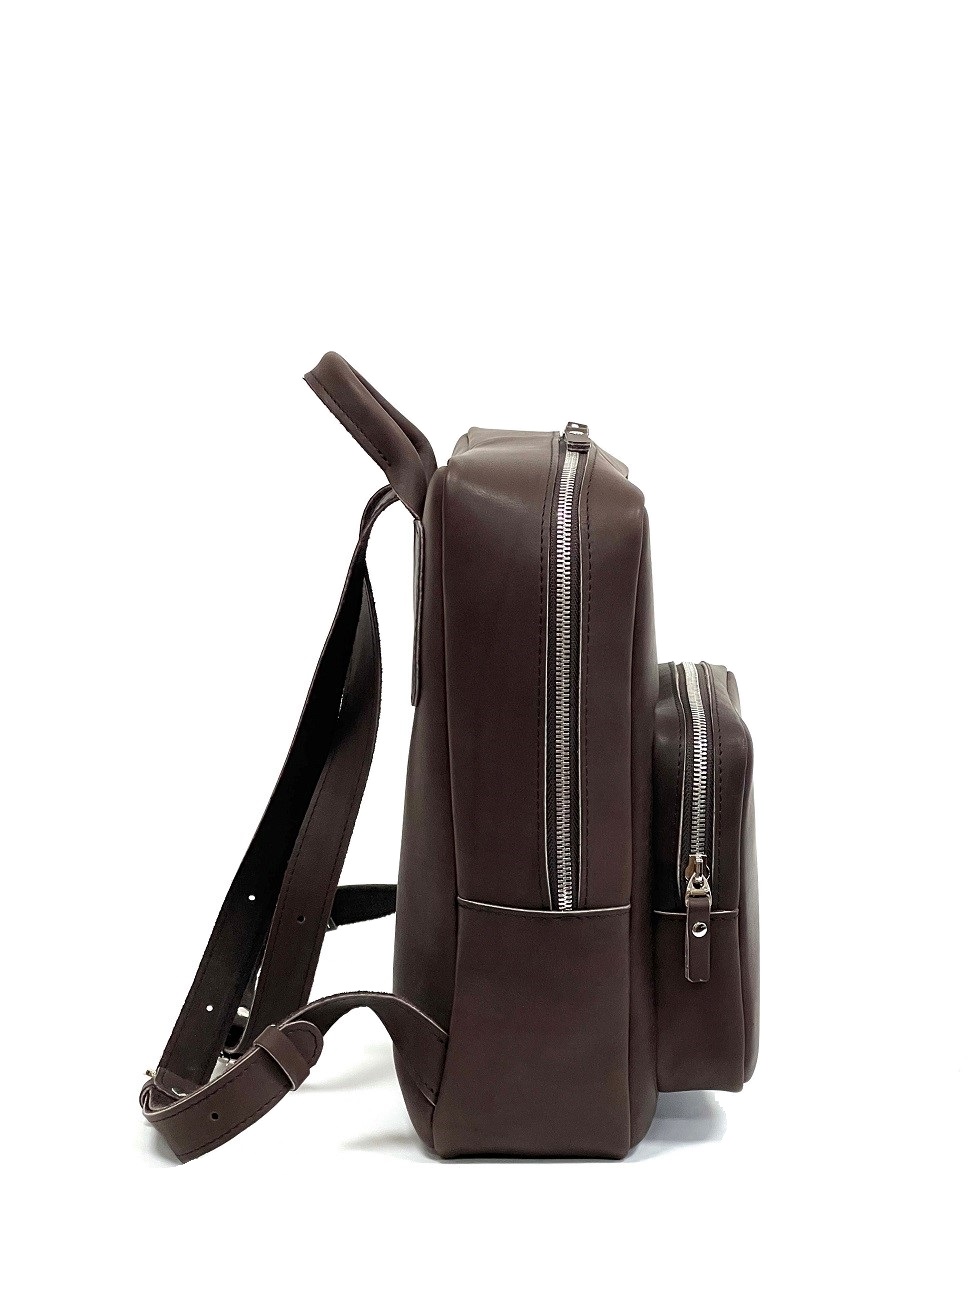 Женский рюкзак из натуральной кожи темно-коричневый B0092 ZIPPER